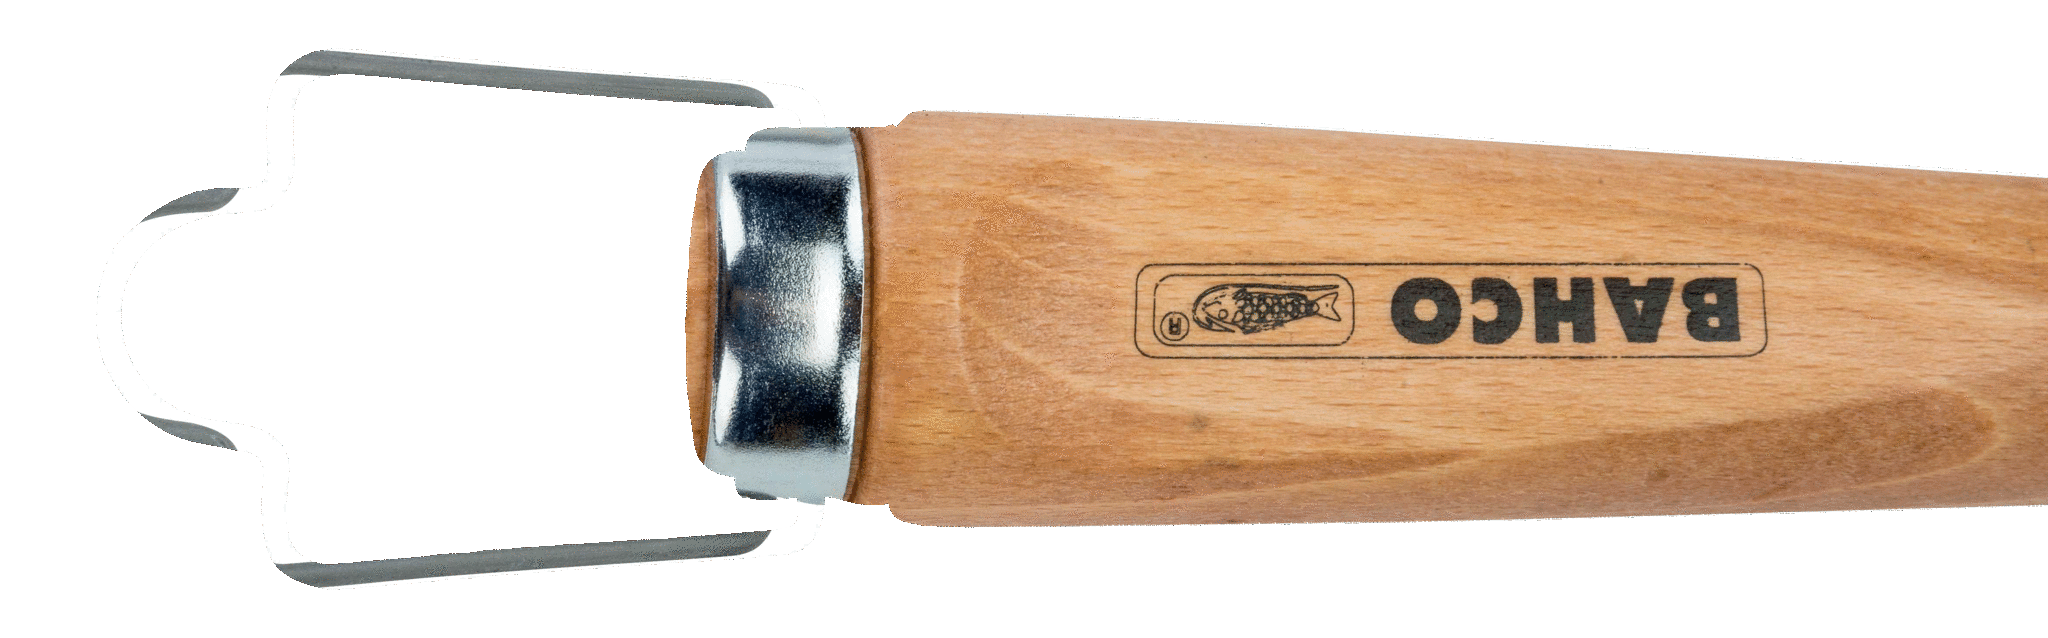 картинка Стамеска с деревянной рукояткой BAHCO 425-14 от магазина "Элит-инструмент"